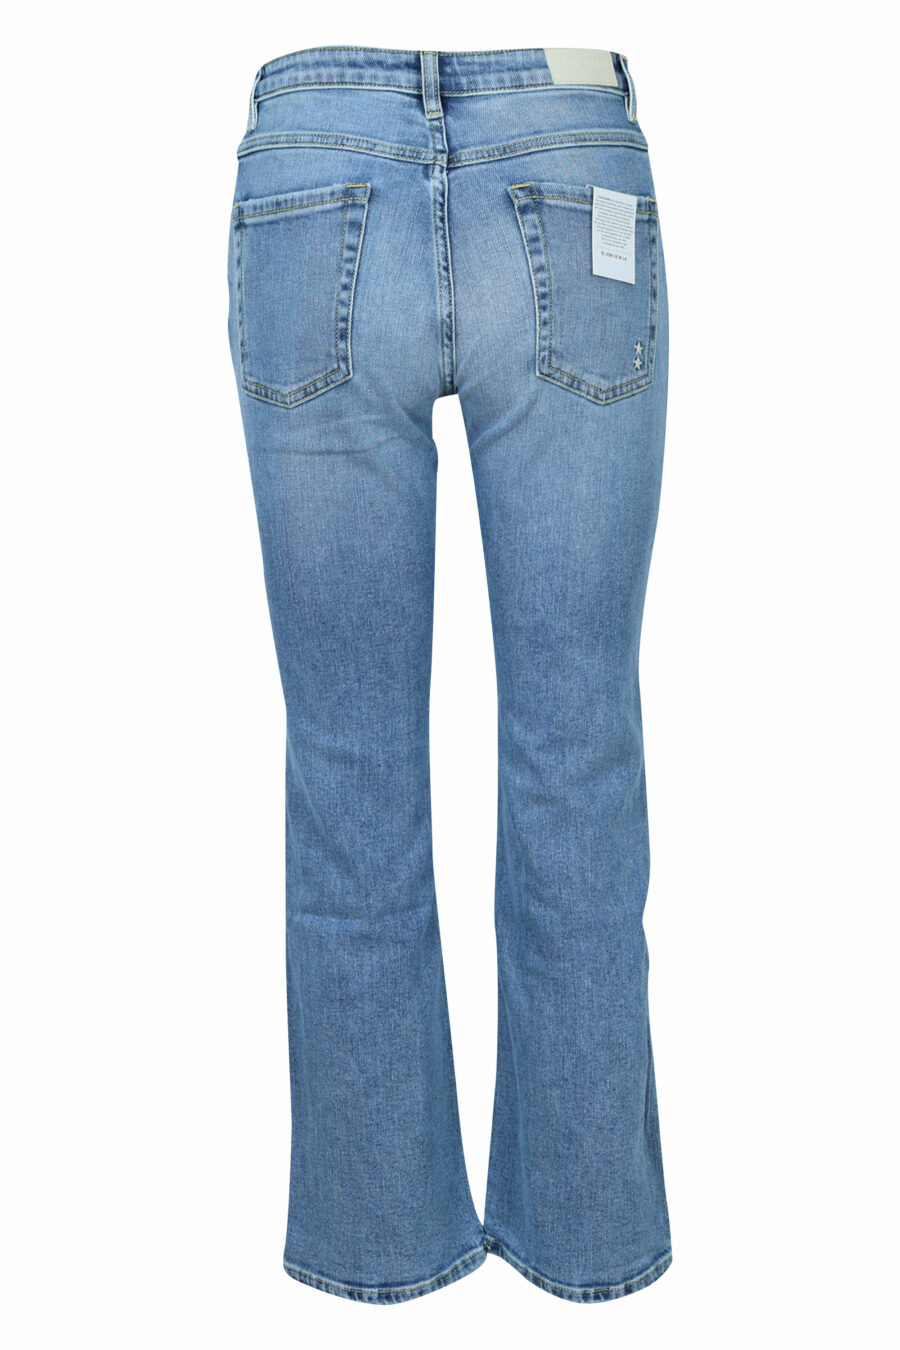 Pantalón vaquero azul lavado "Pam" con bota ancha - 8059772788069 1